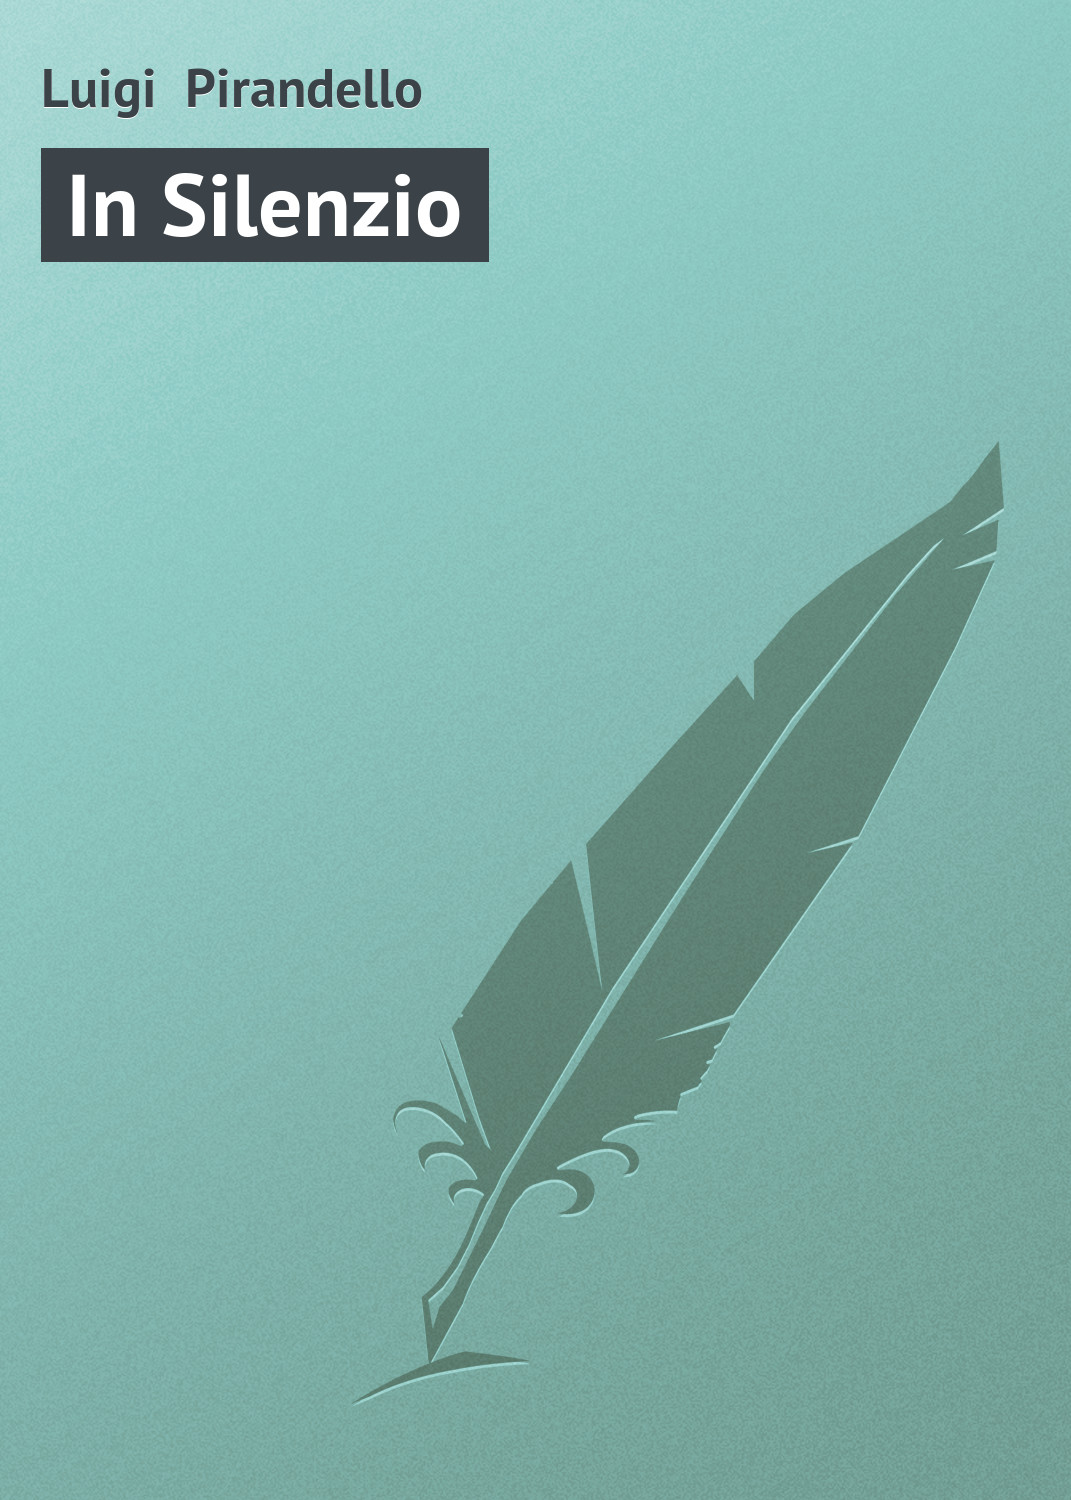 Книга In Silenzio из серии , созданная Luigi Pirandello, может относится к жанру Зарубежная старинная литература, Зарубежная классика. Стоимость электронной книги In Silenzio с идентификатором 21103798 составляет 5.99 руб.